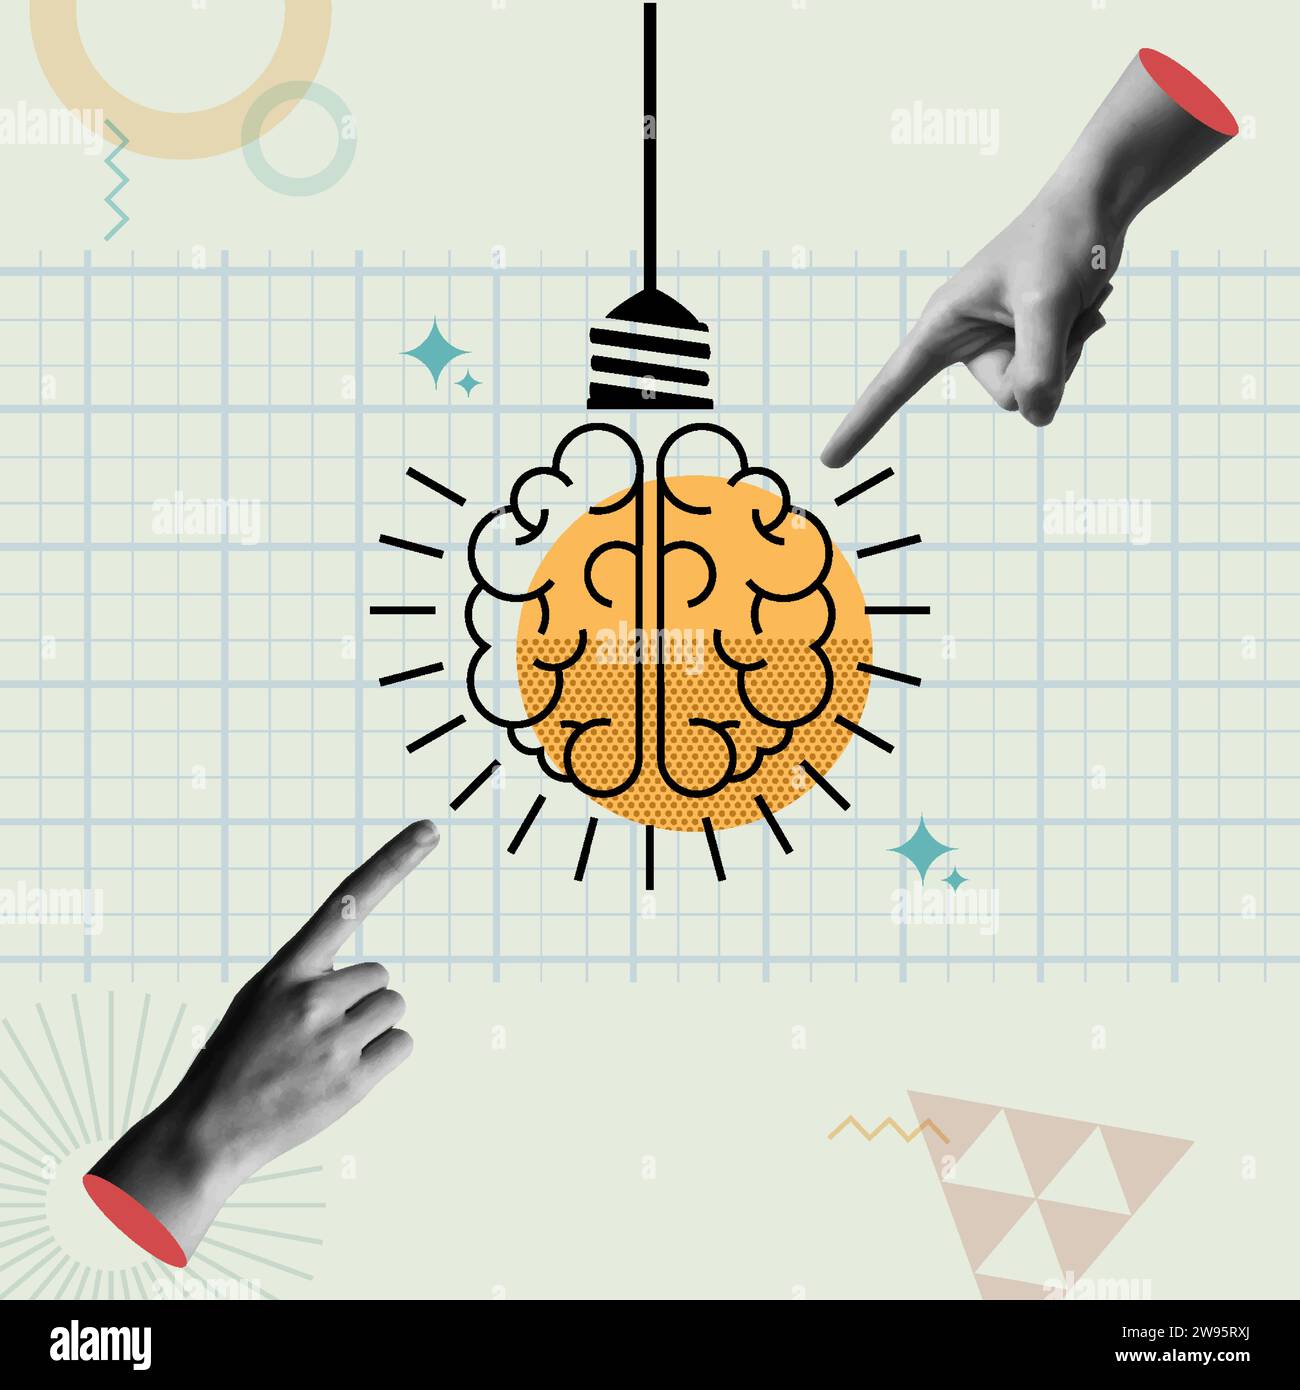 Concept design Bright Ideas. Cervello umano come lampada a lampadina in stile retro collage anni '90 illustrazione vettoriale. concetto di conoscenza, intelligenza, studenti Illustrazione Vettoriale